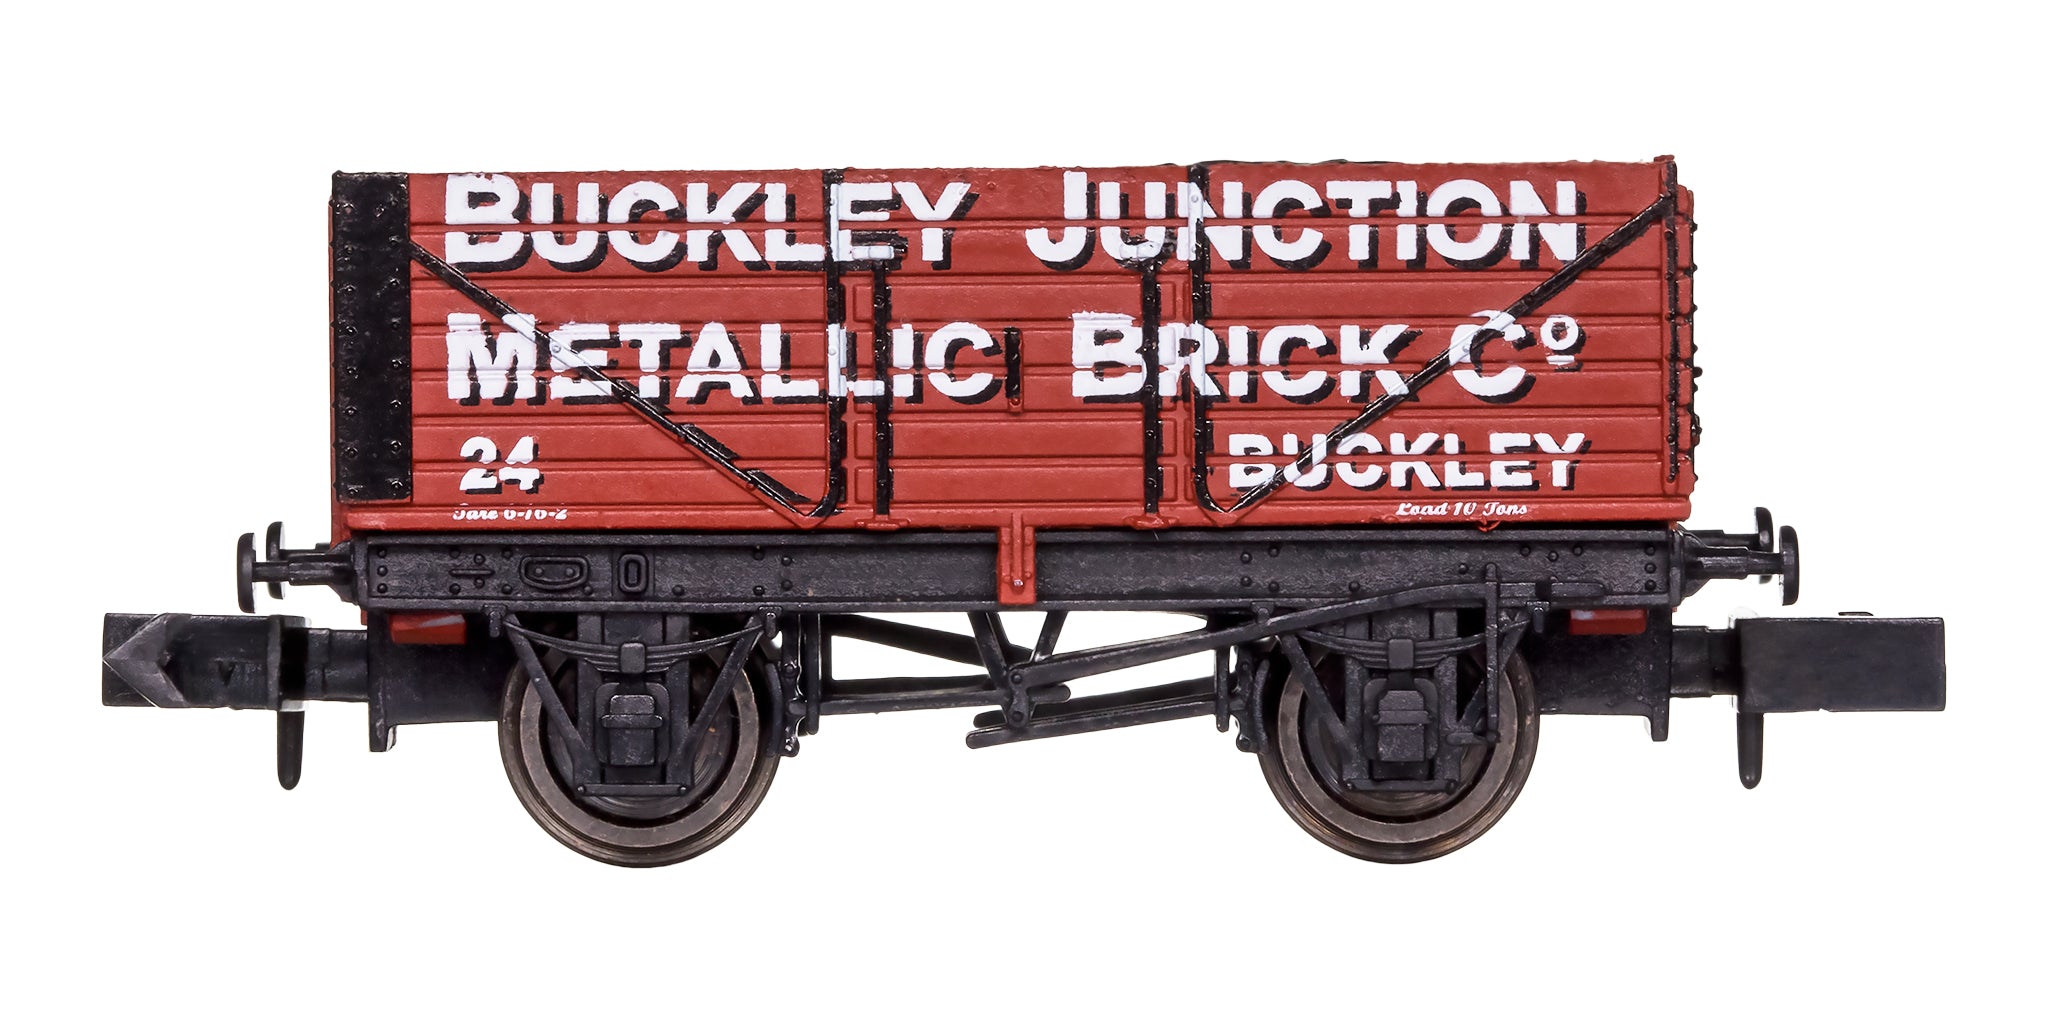 2F-071-088 N Gauge 7 Plank Buckley Junction 24